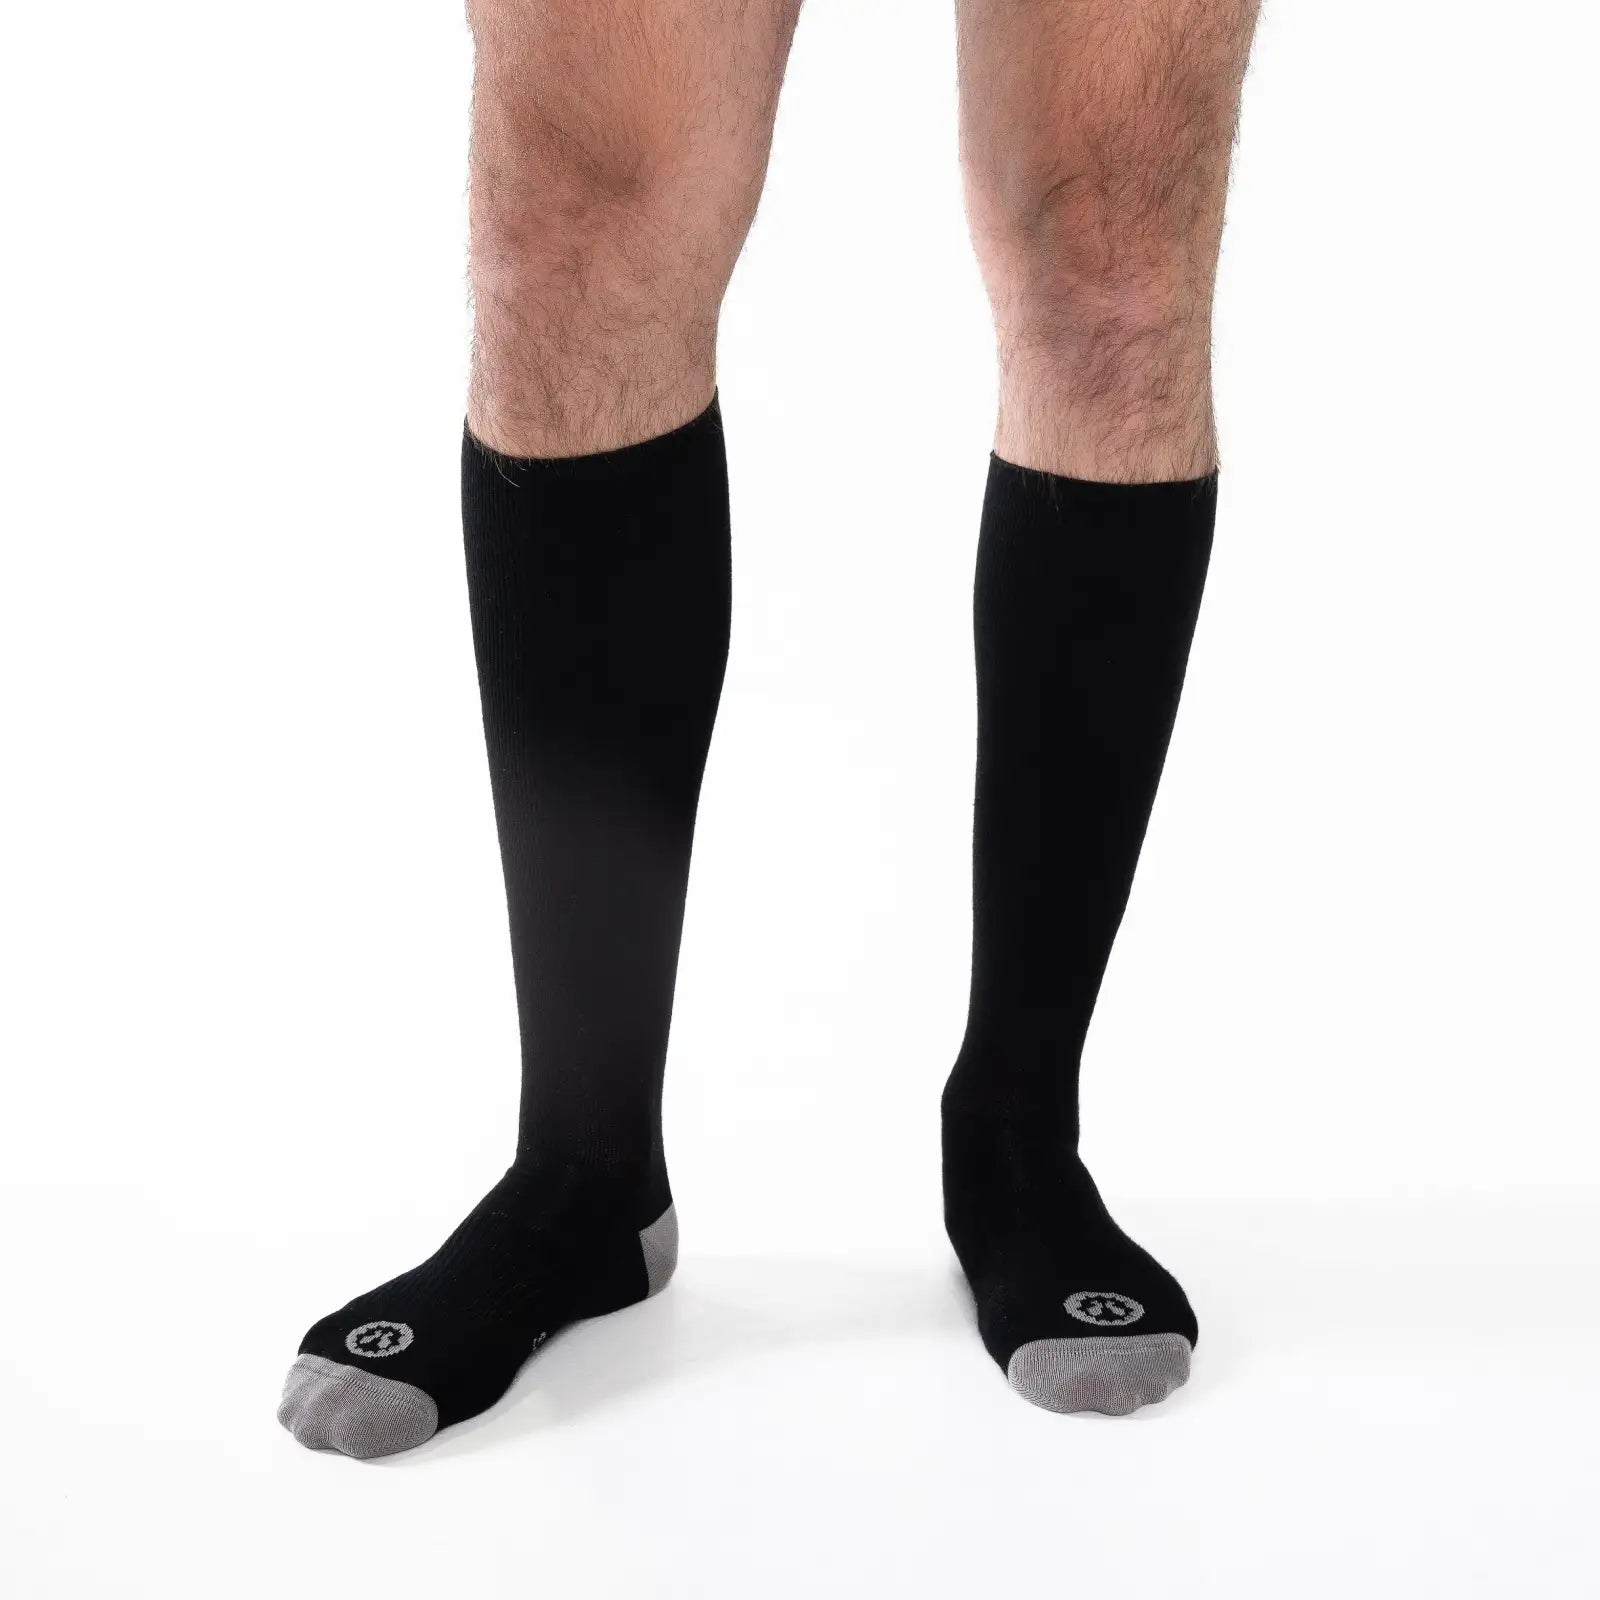 Calcetines de Compresión Negros – Calcetinos